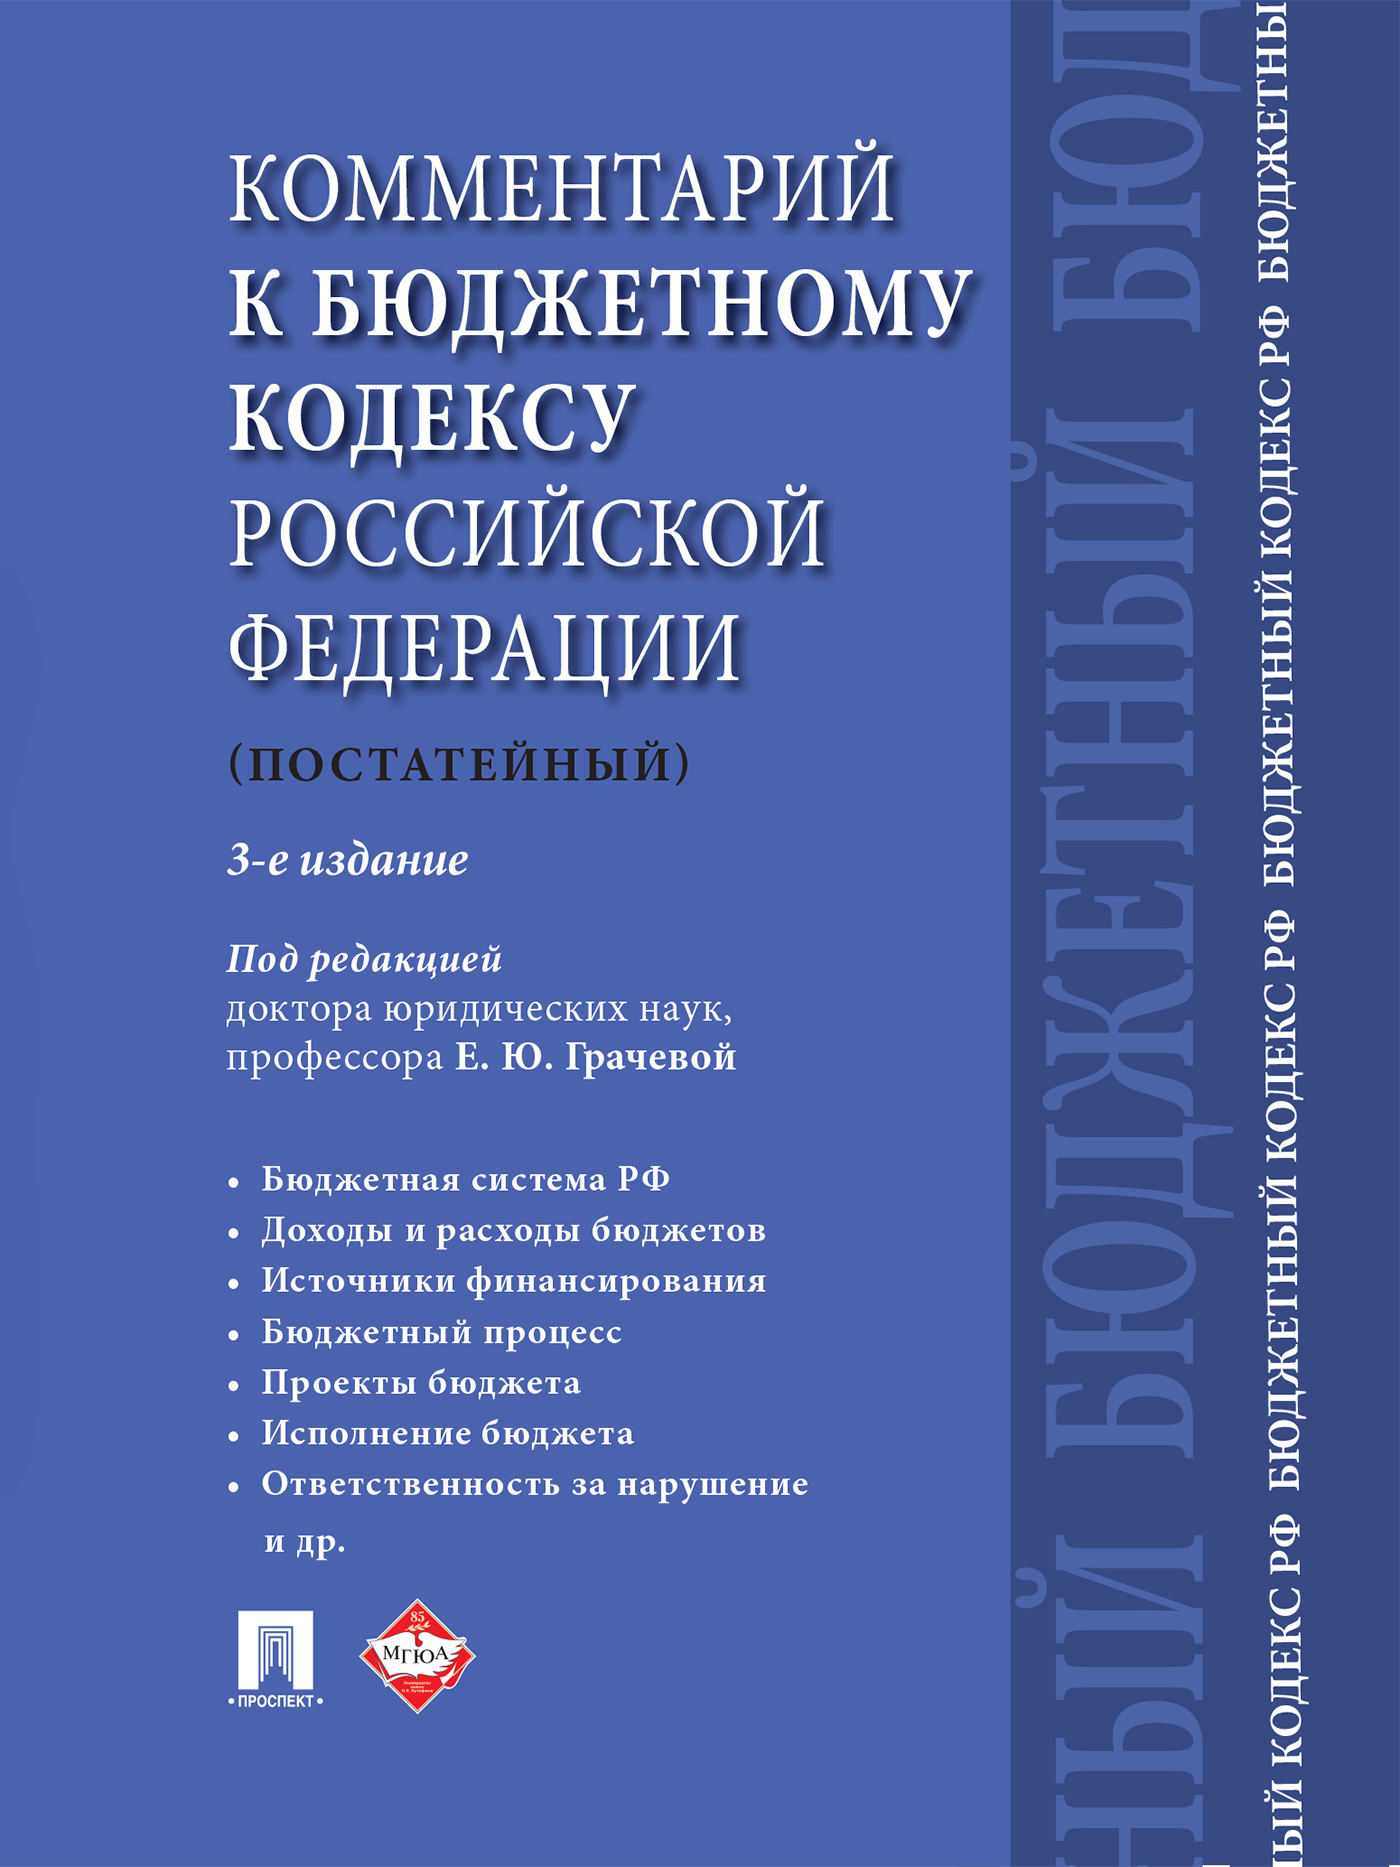 Комментарий к Бюджетному кодексу Российской Федерации (постатейный). 3-е издание